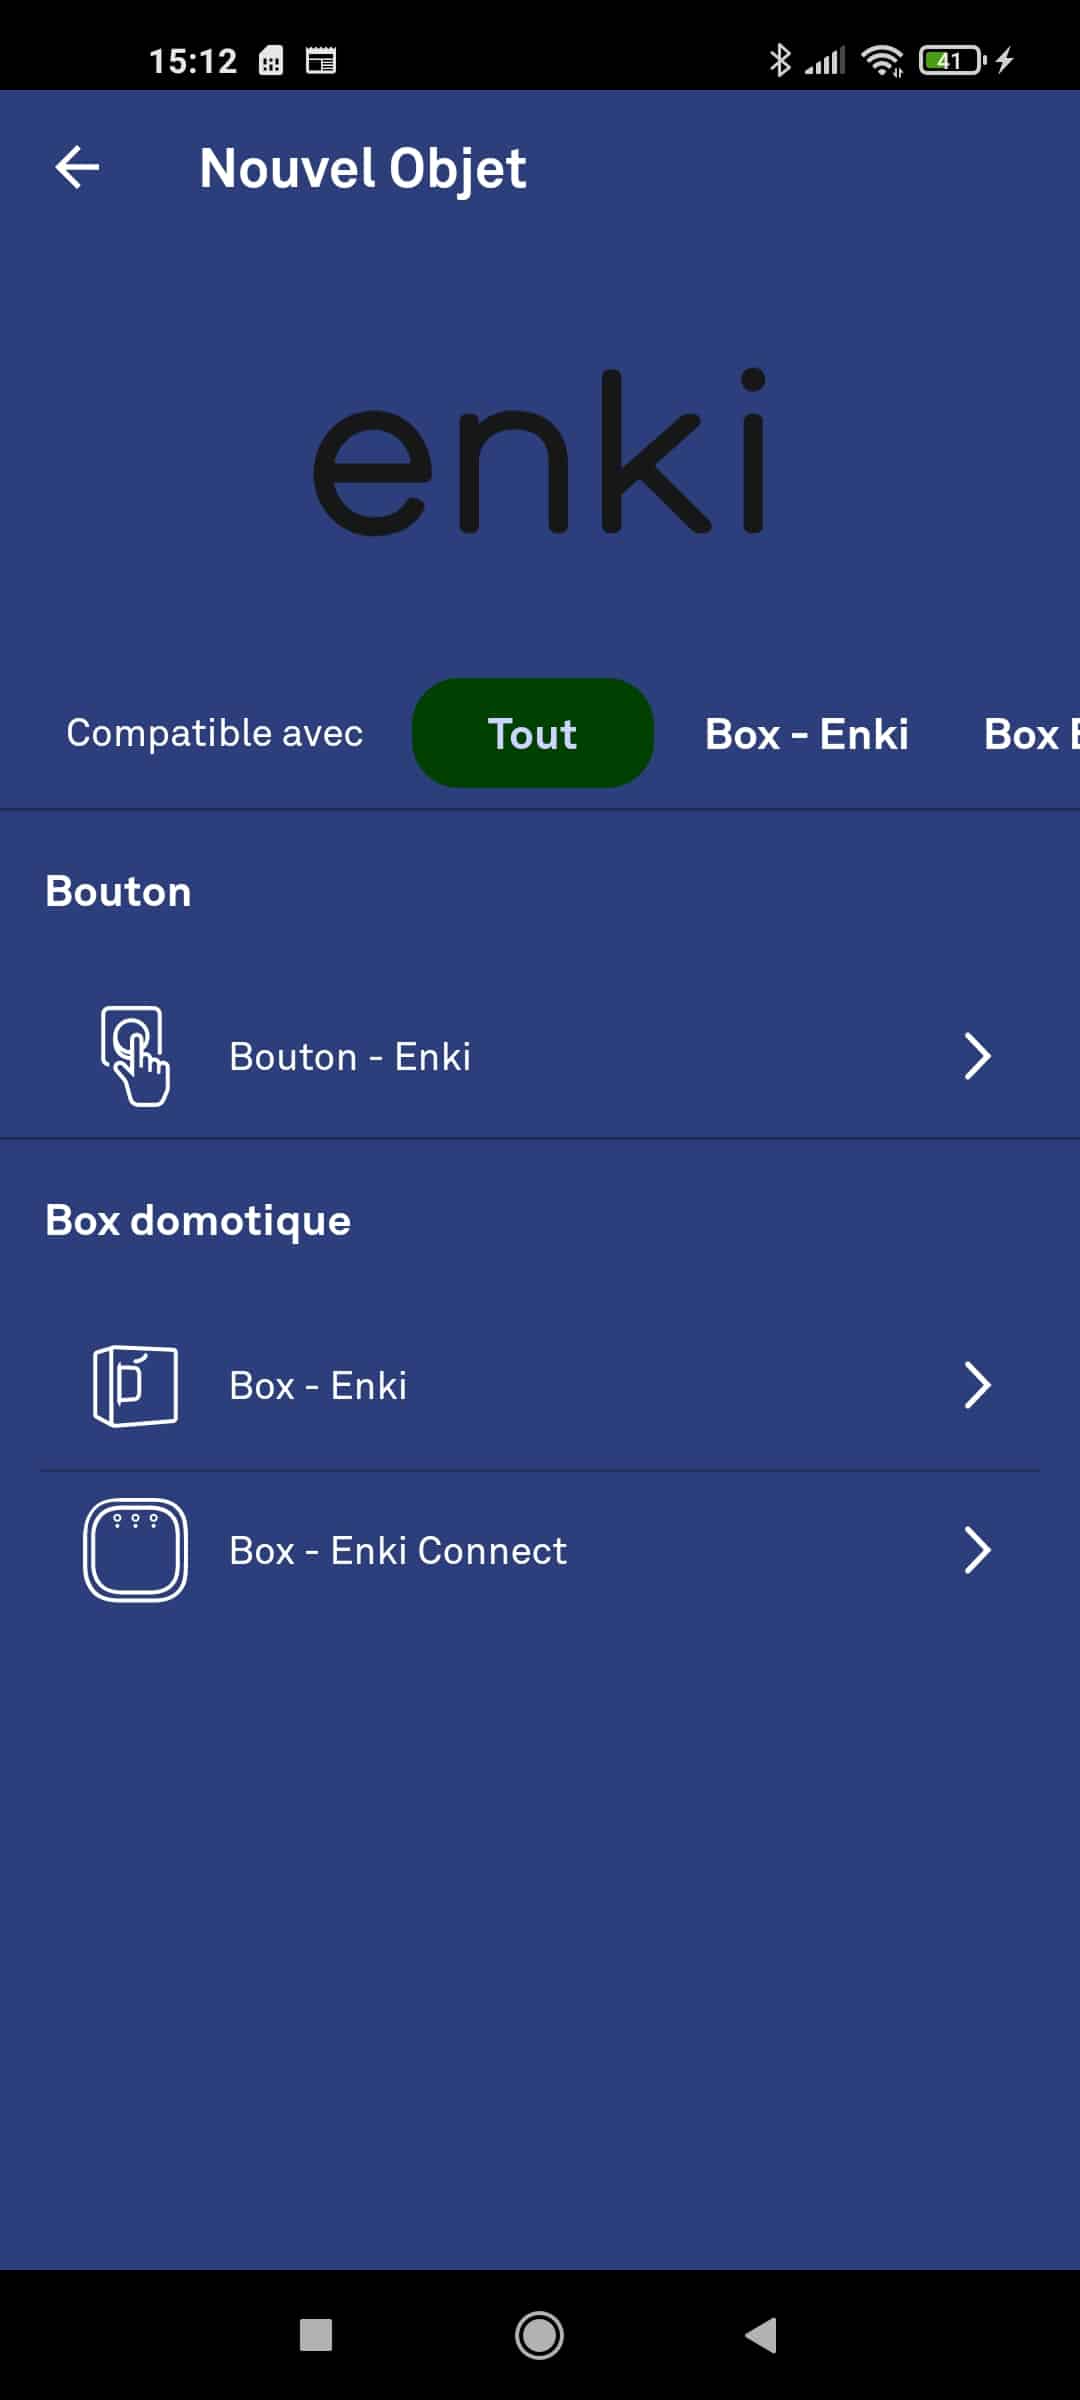 Box domotique Enki, la solution maison connectée